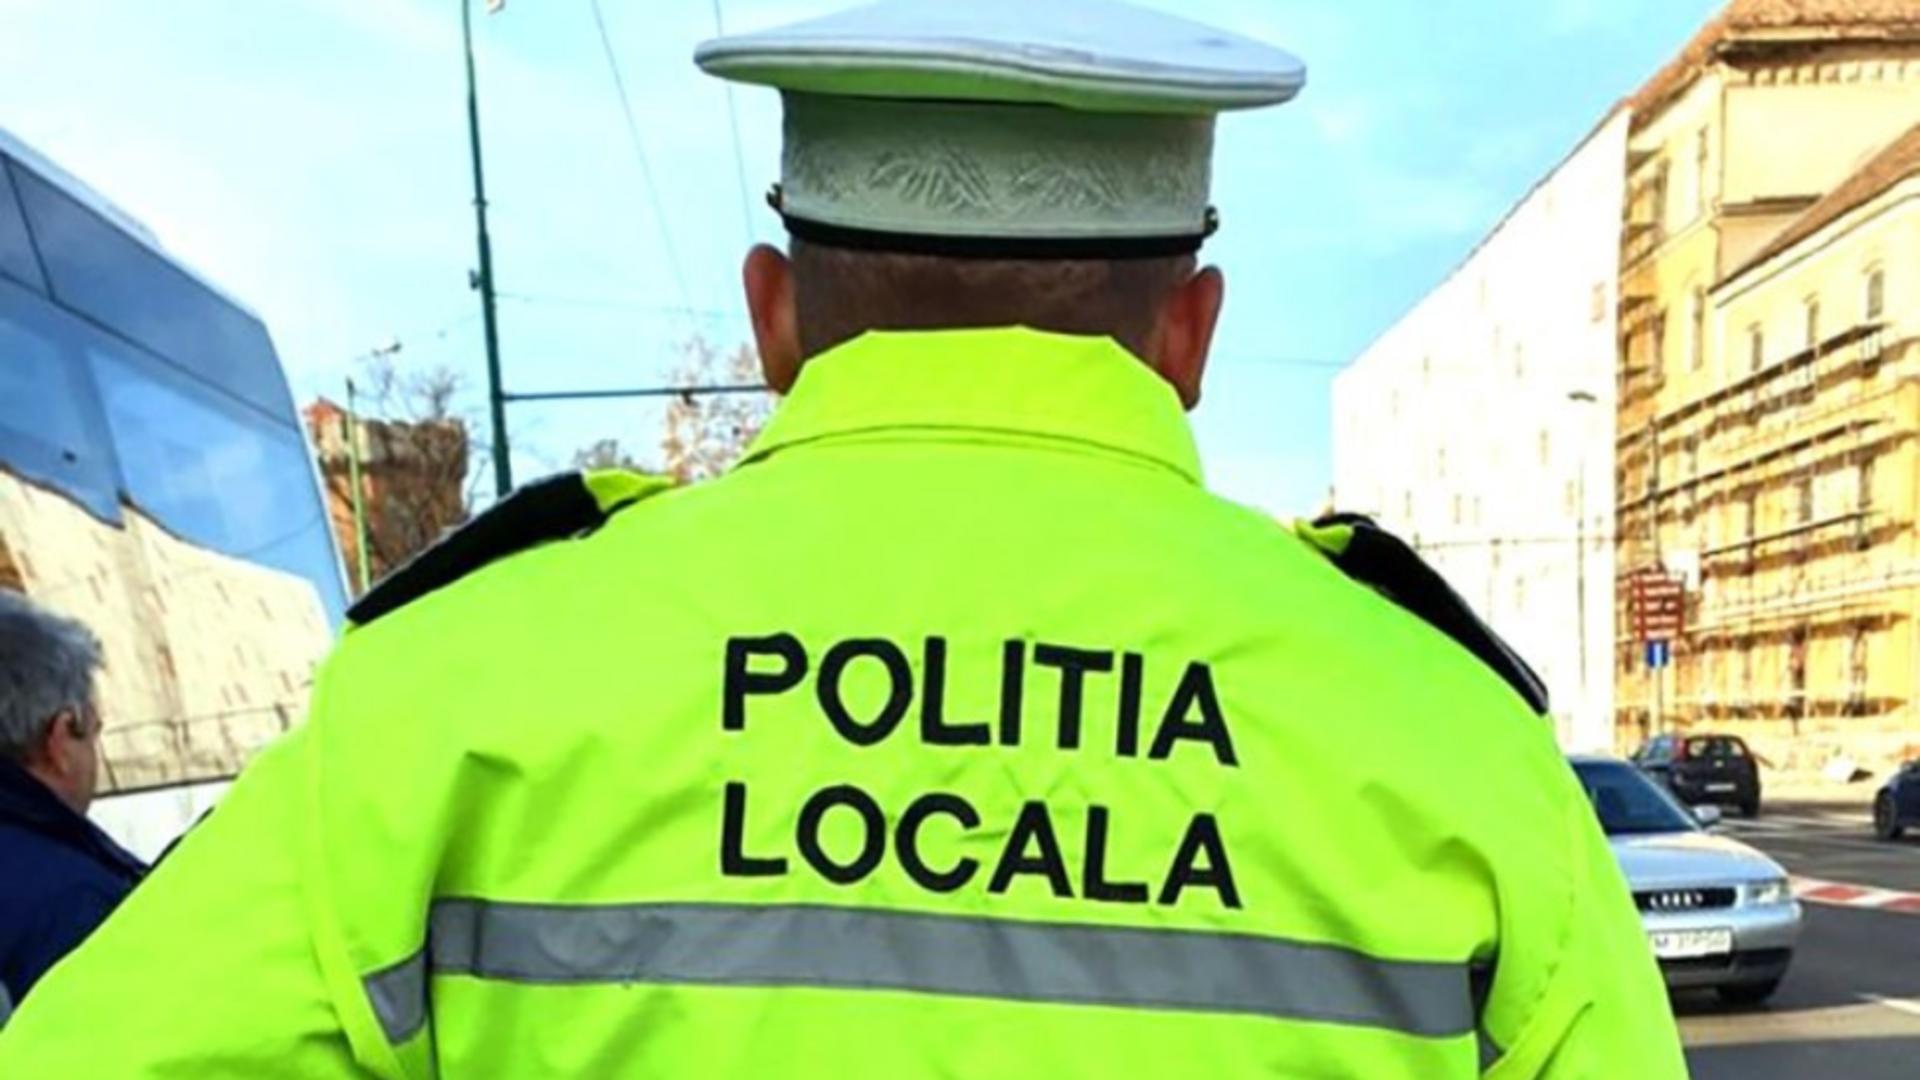 Polițist - imagine cu notă sugestivă